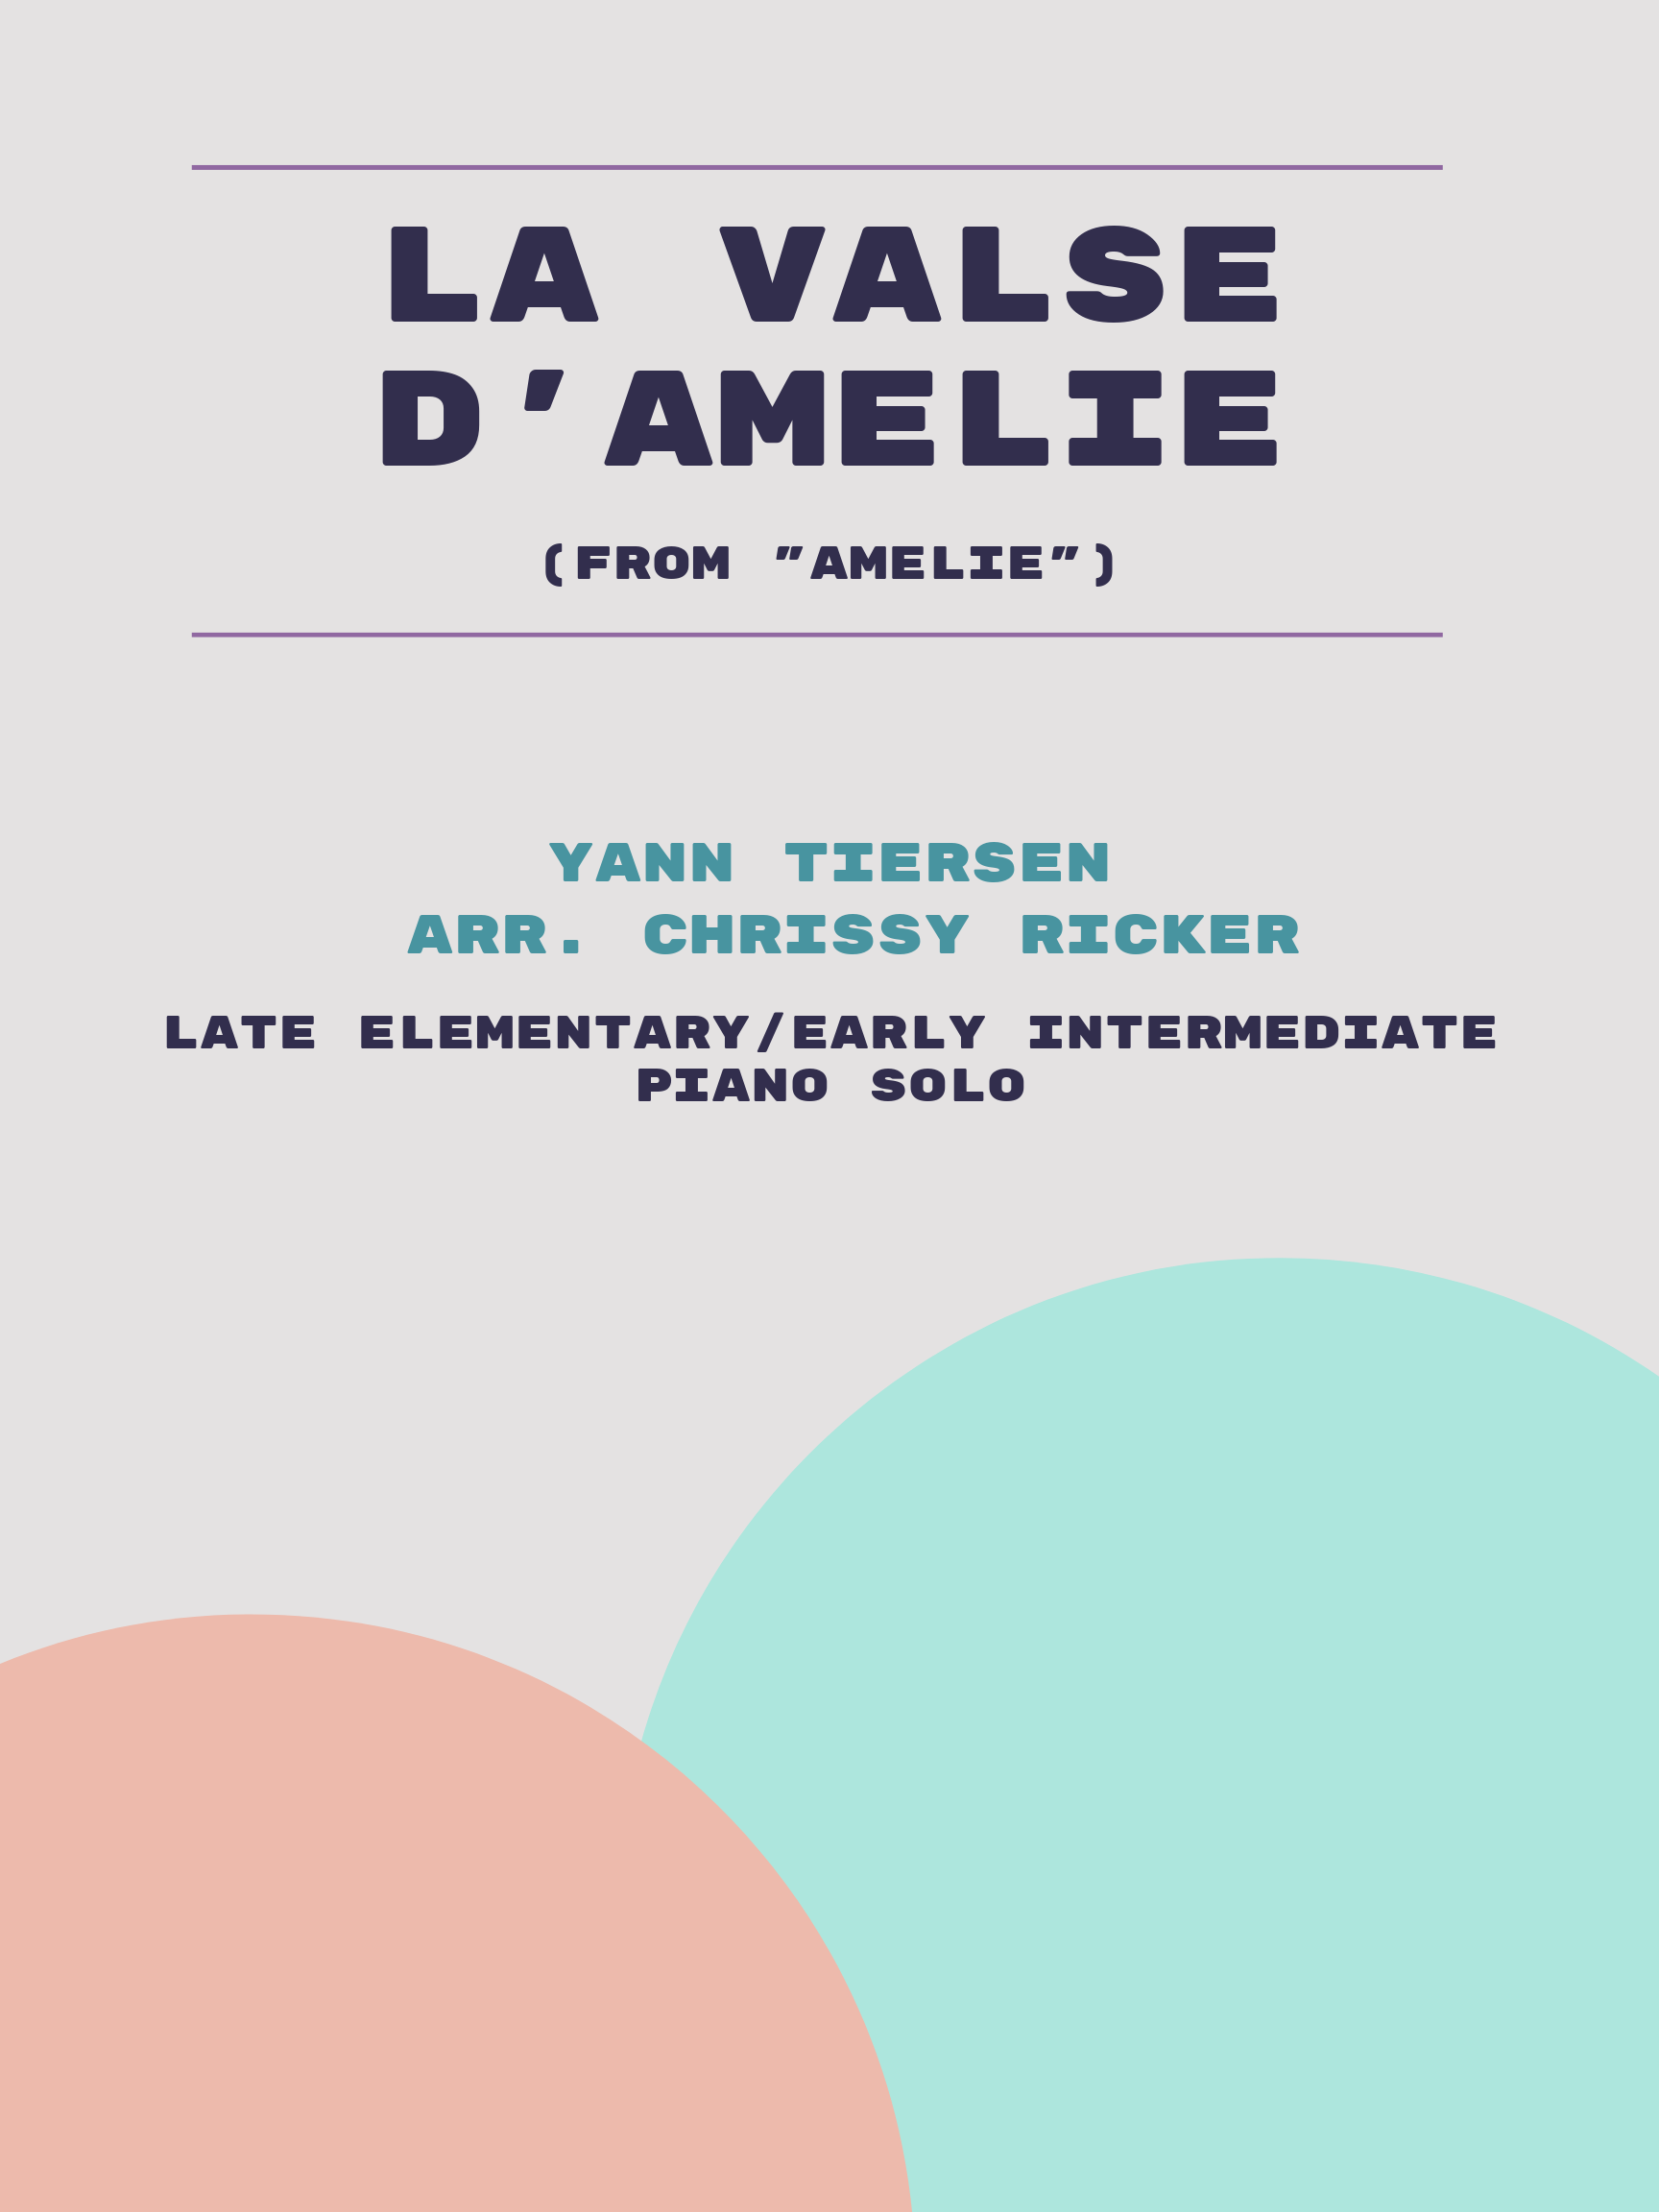 La Valse d'Amelie by Yann Tiersen